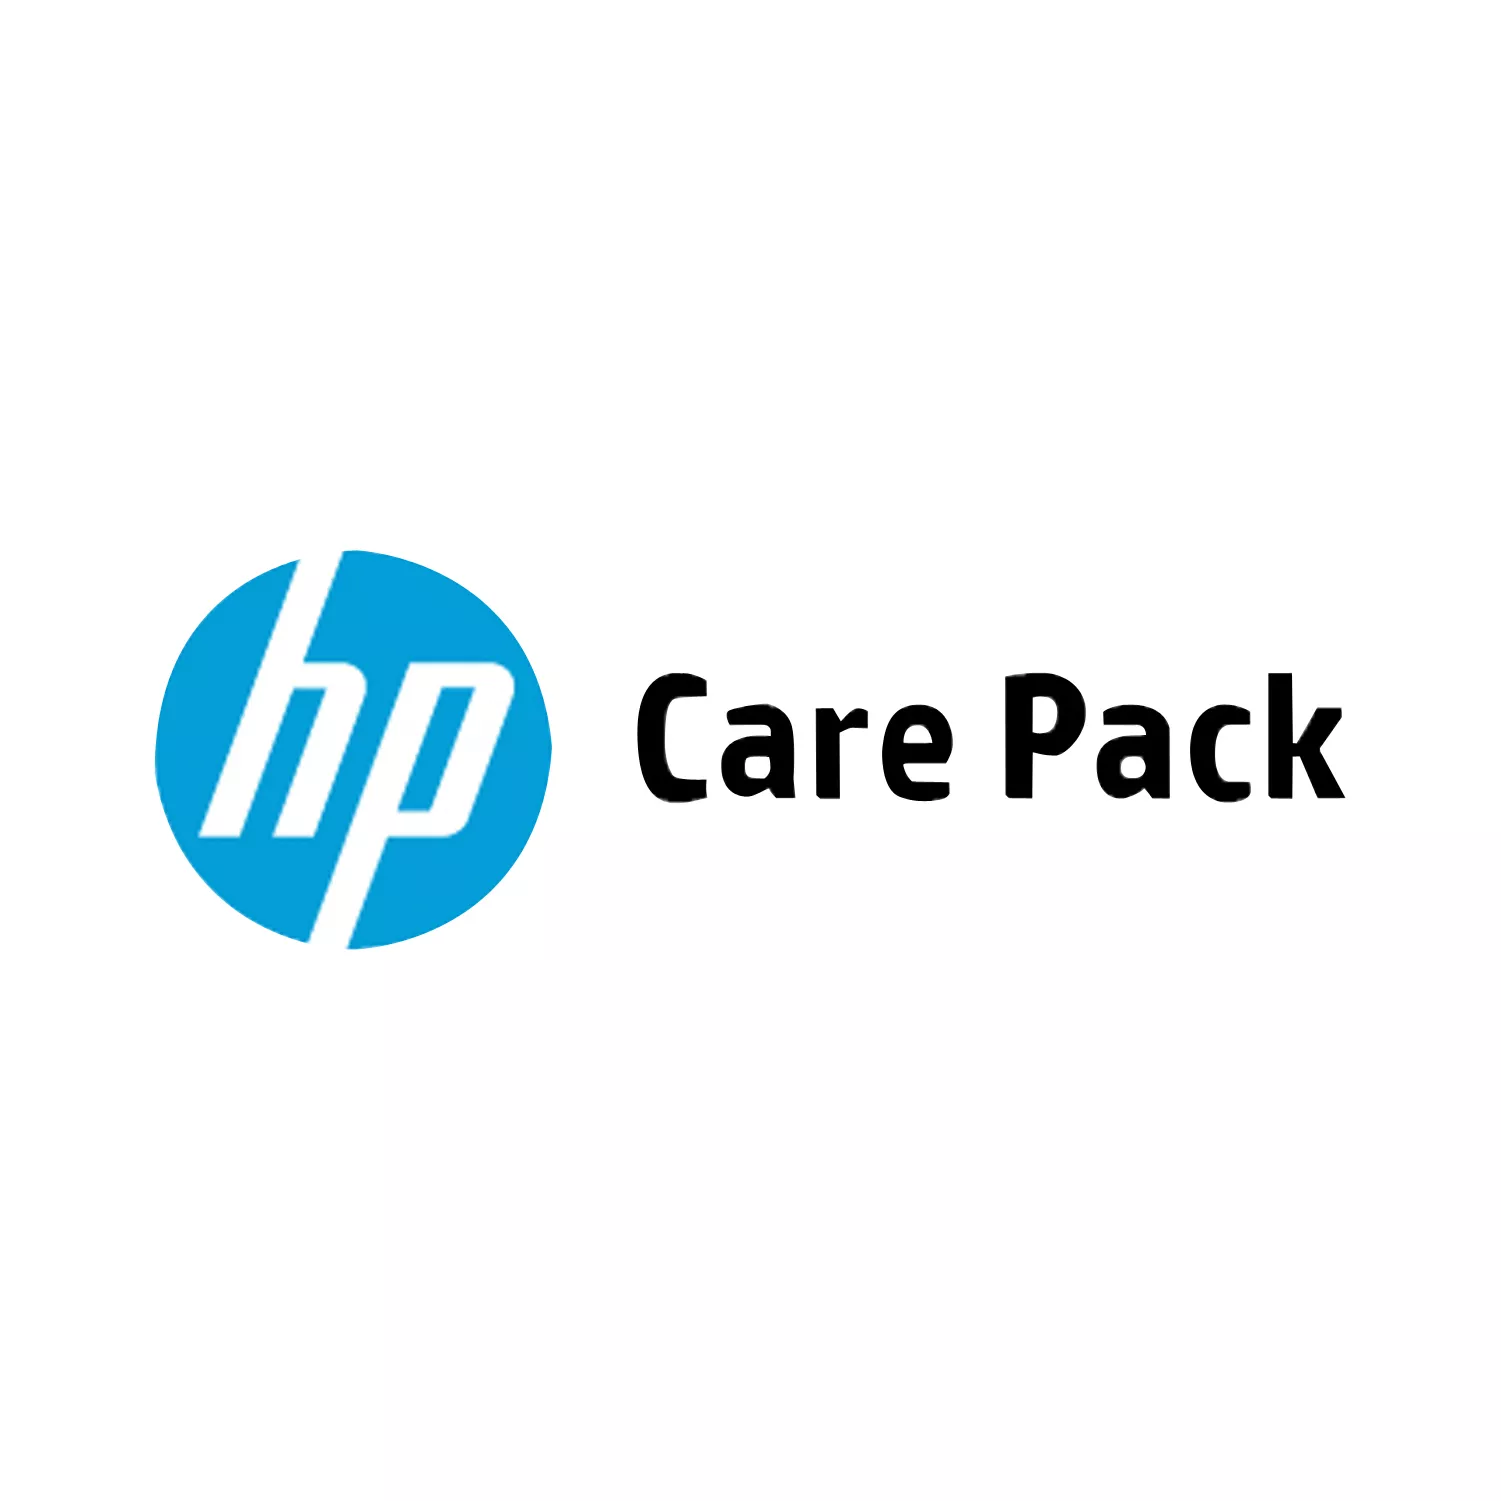 Vente HP Service avec intervention sur site le jour HP au meilleur prix - visuel 2